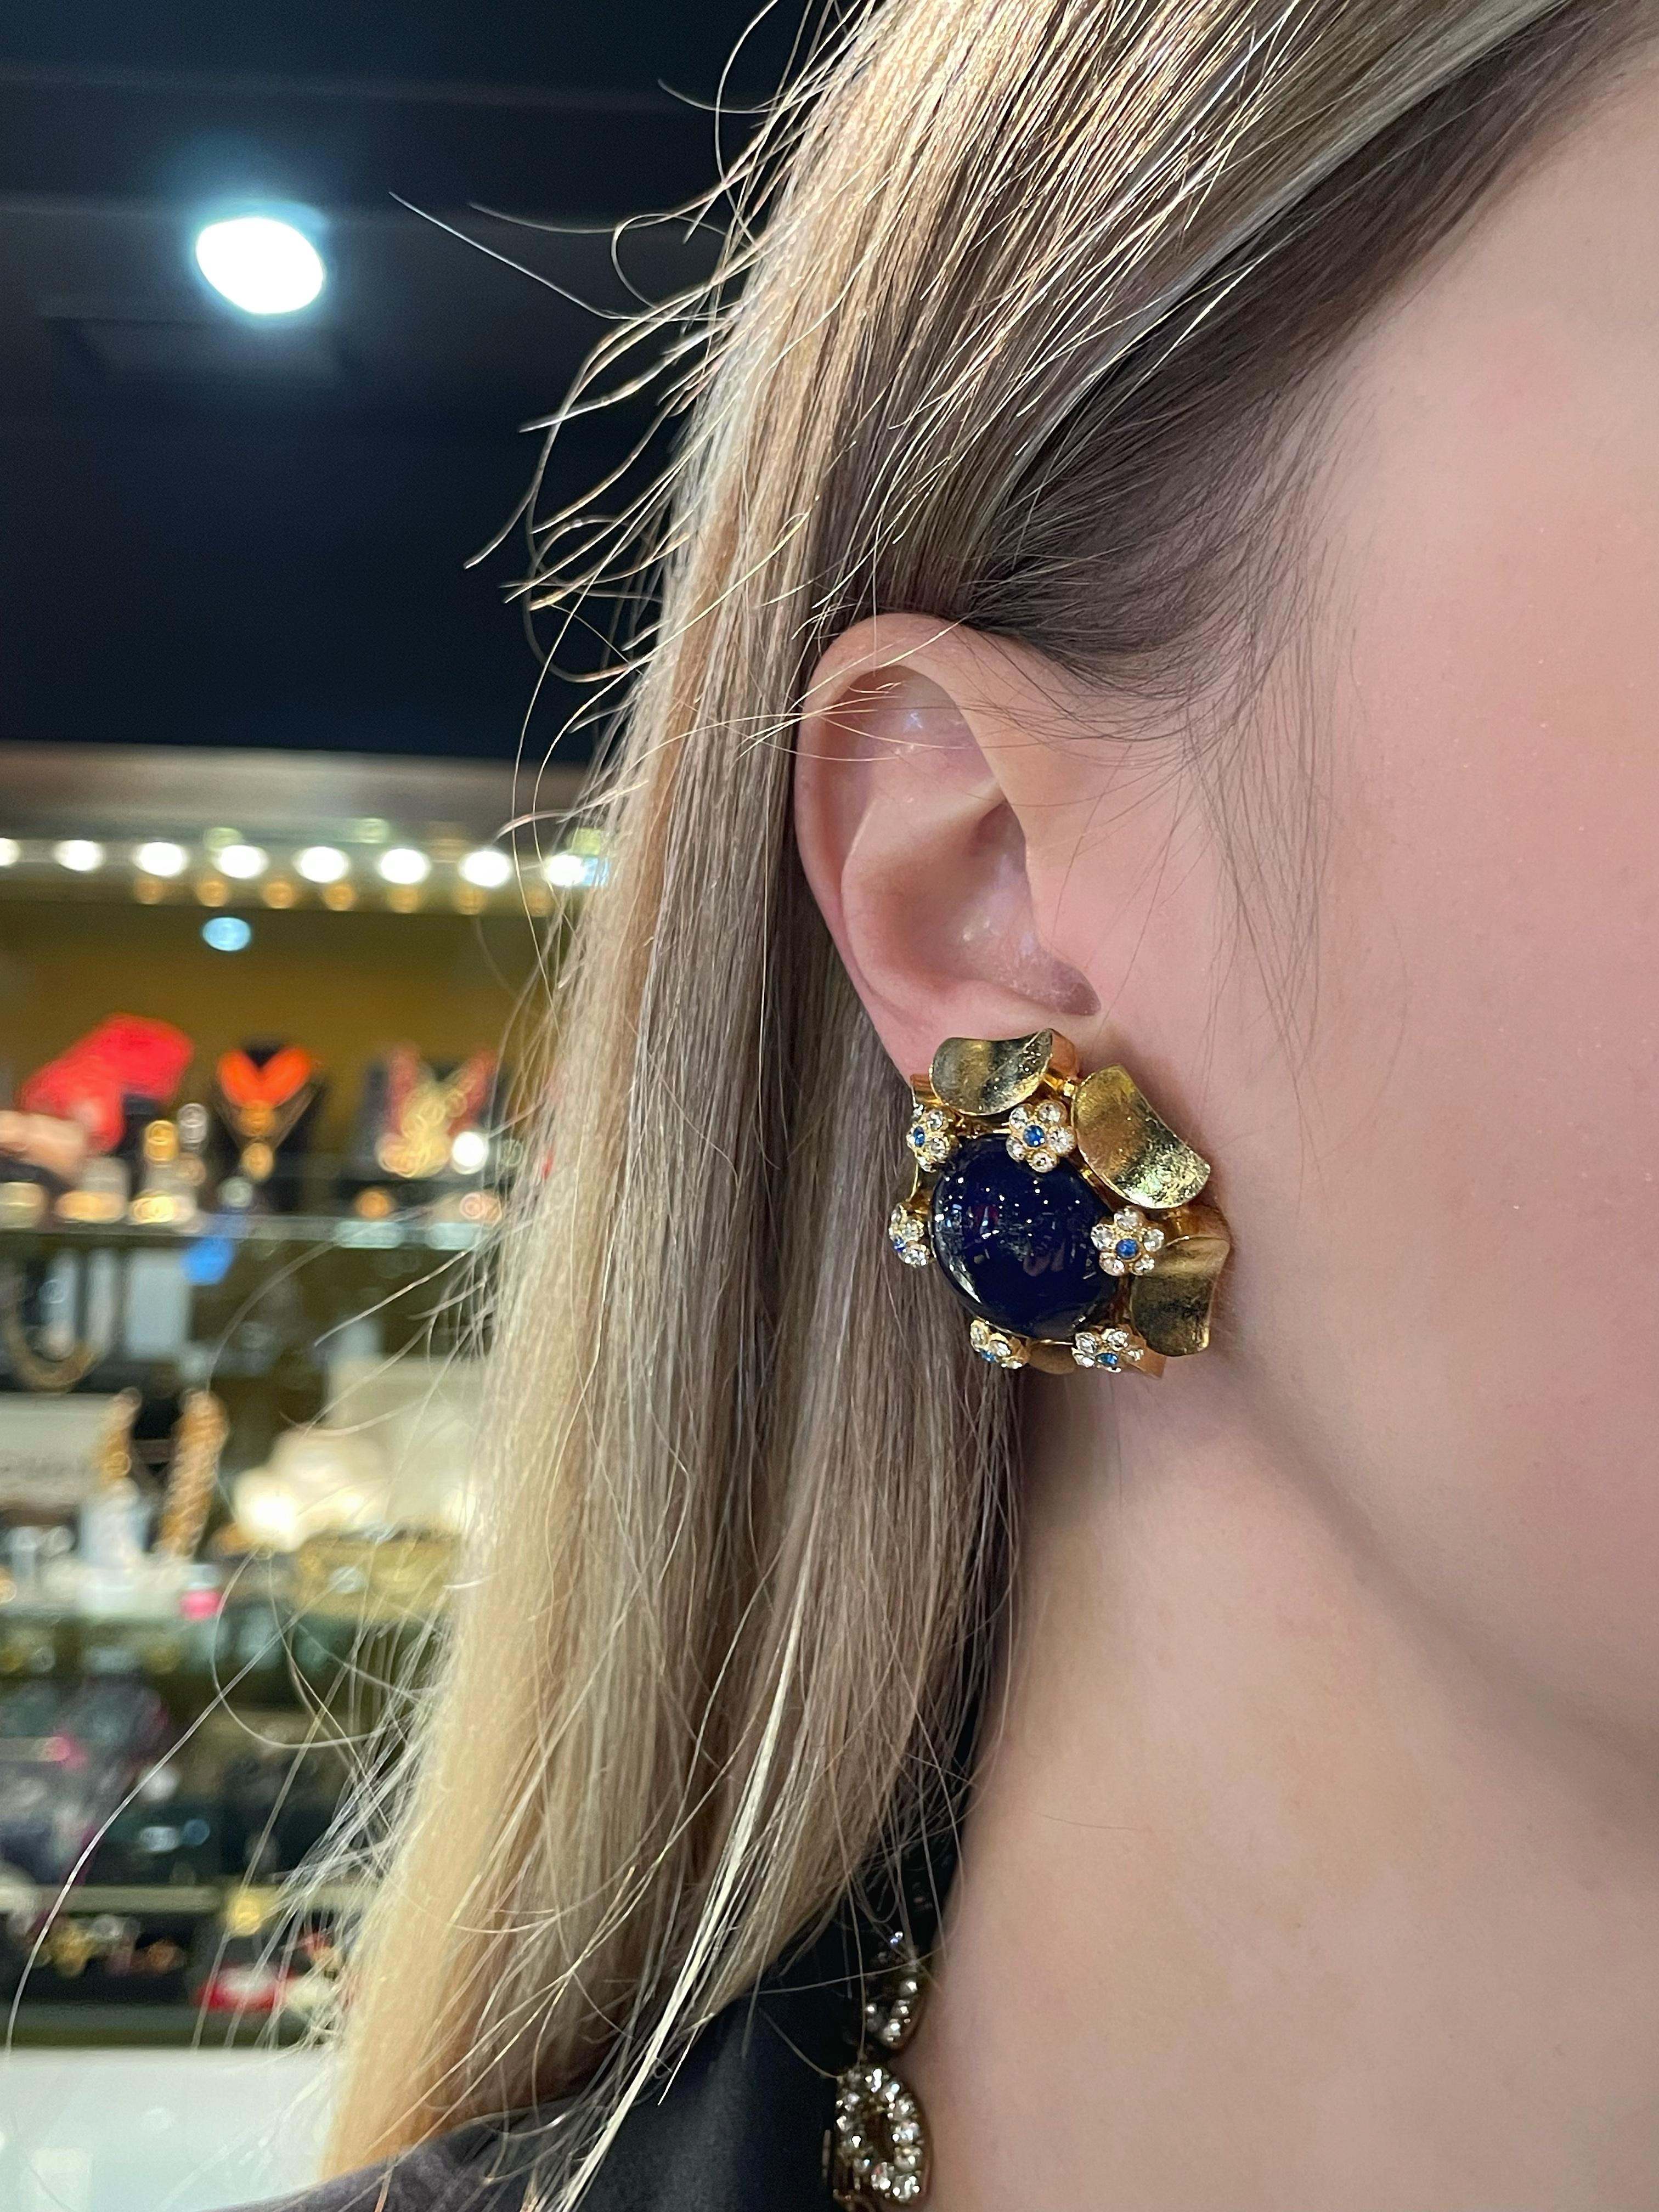 Es handelt sich um ein Paar Vintage-Ohrringe, die 1967 von Christian Dior entworfen wurden. Das Stück ist aus goldfarbenem, unedlem Metall gefertigt. Er ist mit violettblauen Gripoix-Glascabochons und glänzenden Kristallen besetzt. 

Gezeichnet: